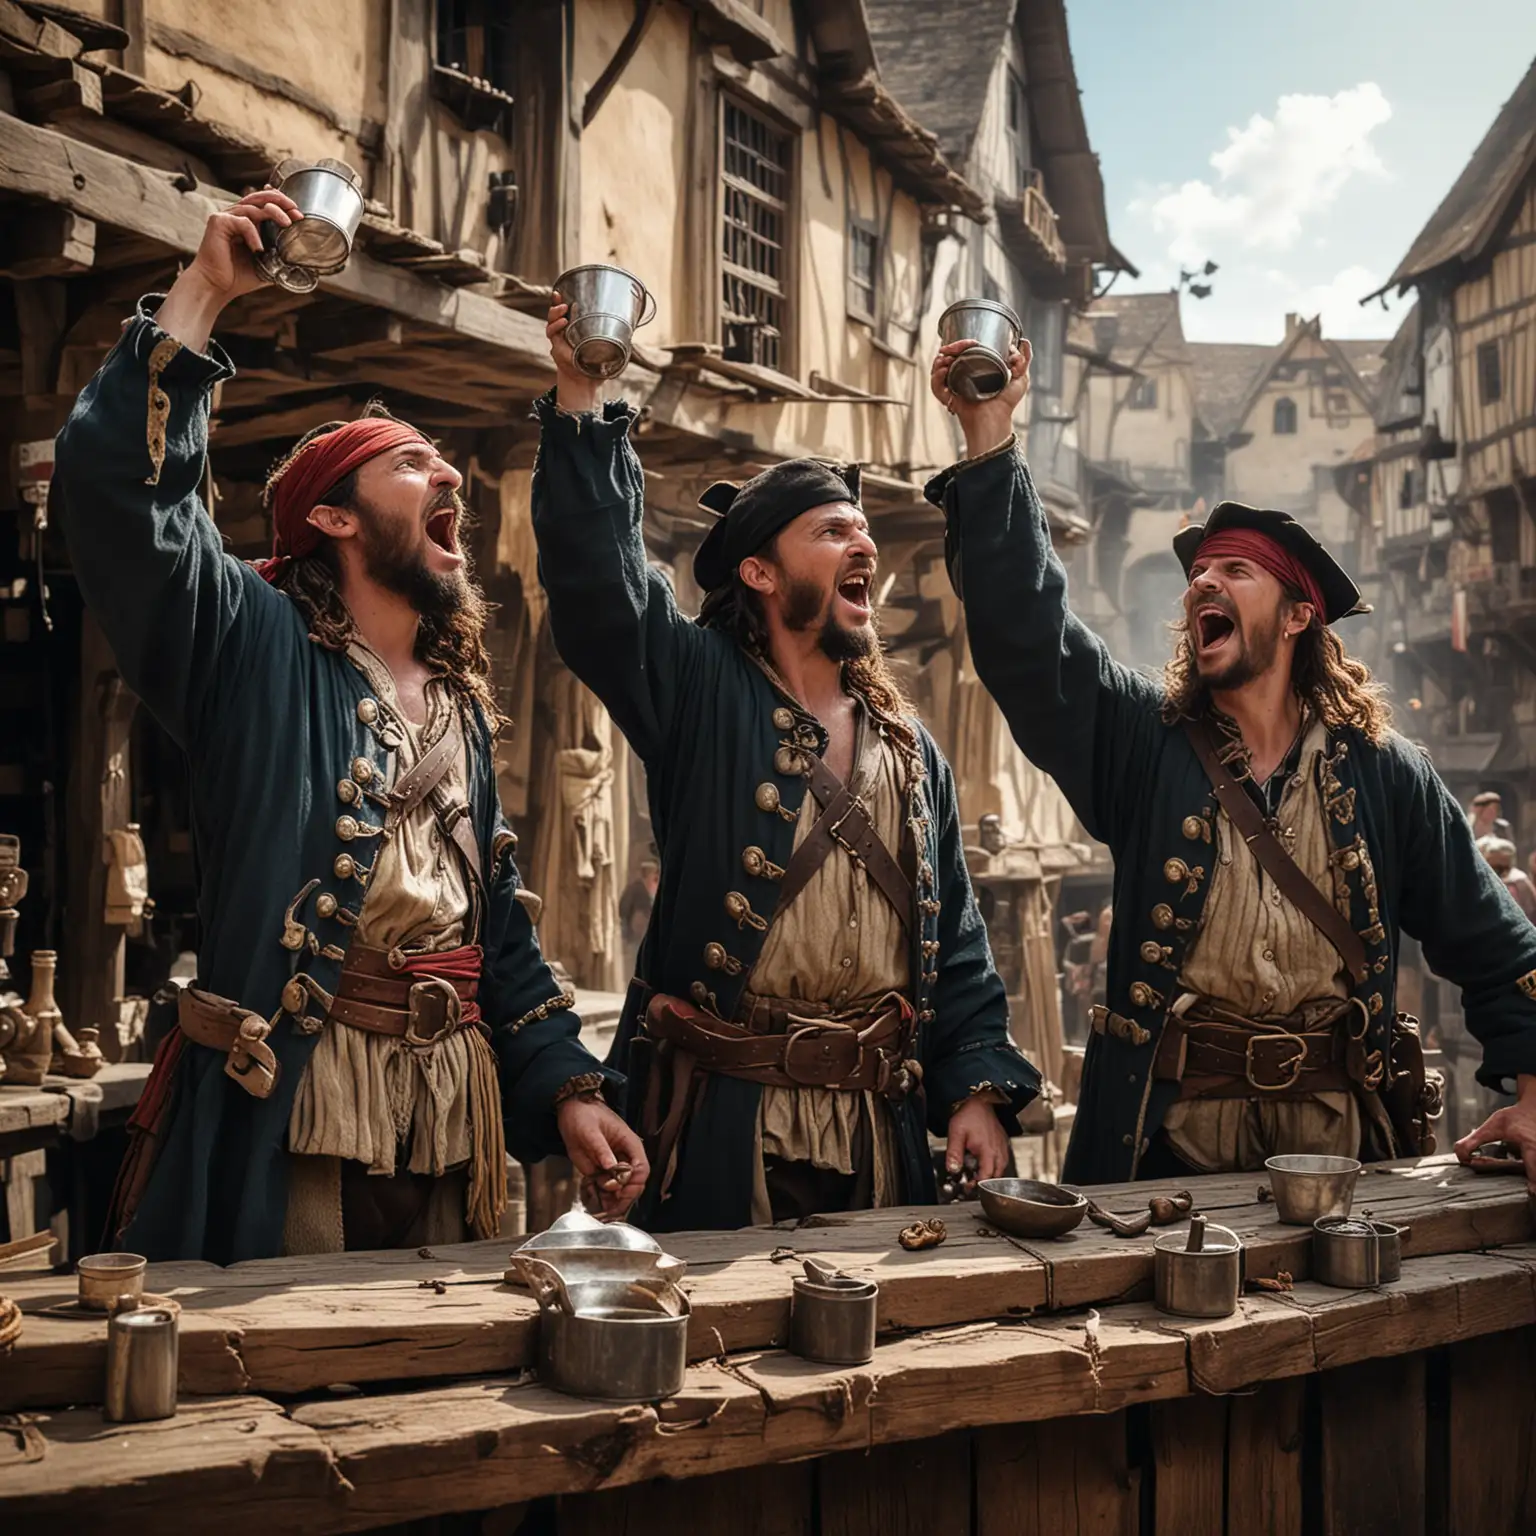 Medieval Pirates Celebrating in Marketplace